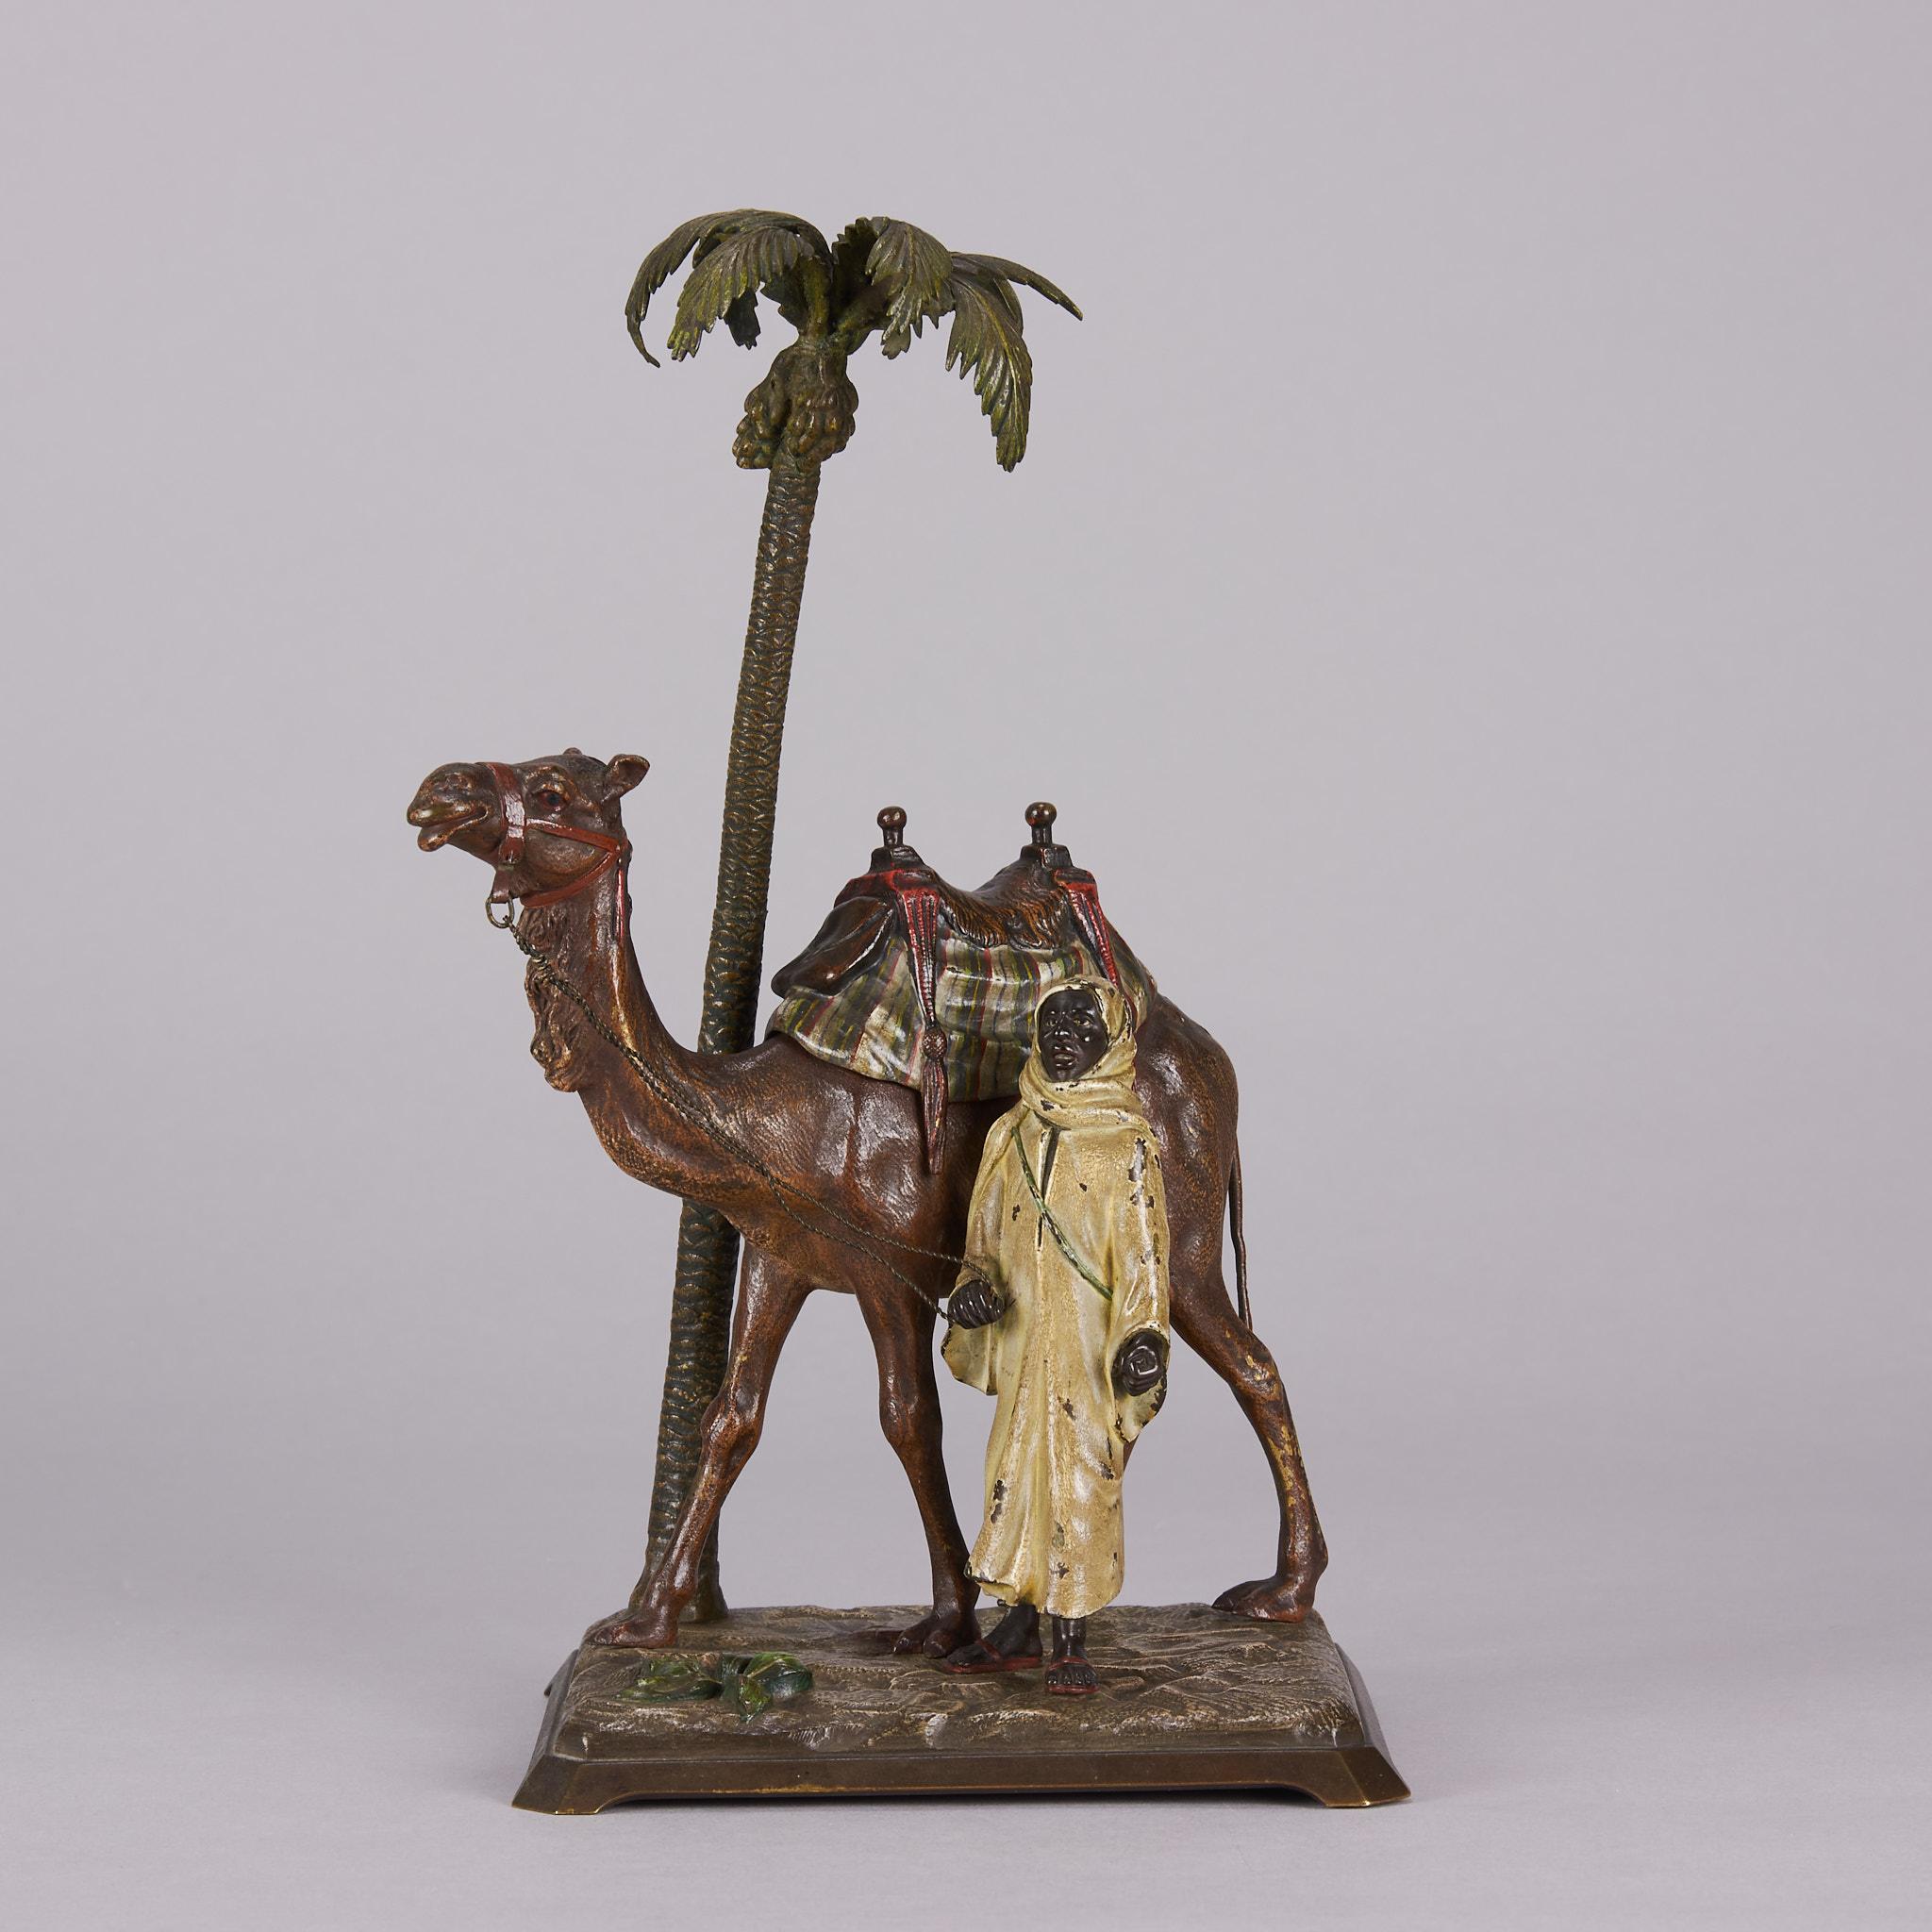 Eine auffällige österreichische Bronzegruppe aus dem frühen 20. Jahrhundert mit einem Beduinenmann, der neben seinem Kamel an einer Palme steht, auf einem naturalistischen, erhöhten Sockel. Der Sattel des Kamels lässt sich öffnen und gibt den Blick